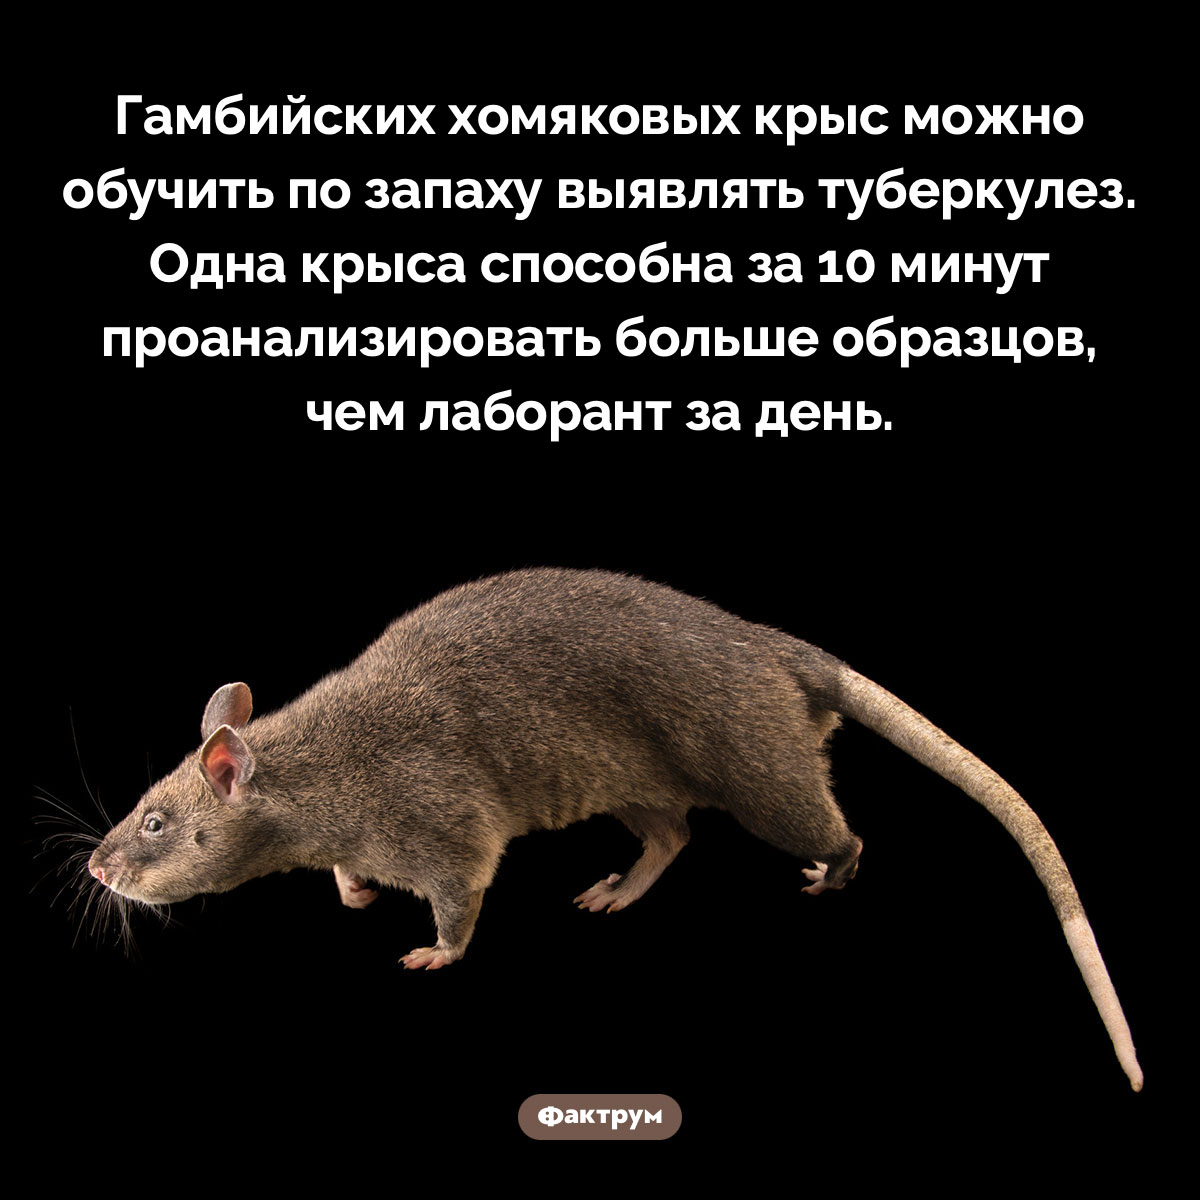 Крыса-лаборант. Гамбийских хомяковых крыс можно обучить по запаху выявлять туберкулез. Одна крыса способна за 10 минут проанализировать больше образцов, чем лаборант за день.